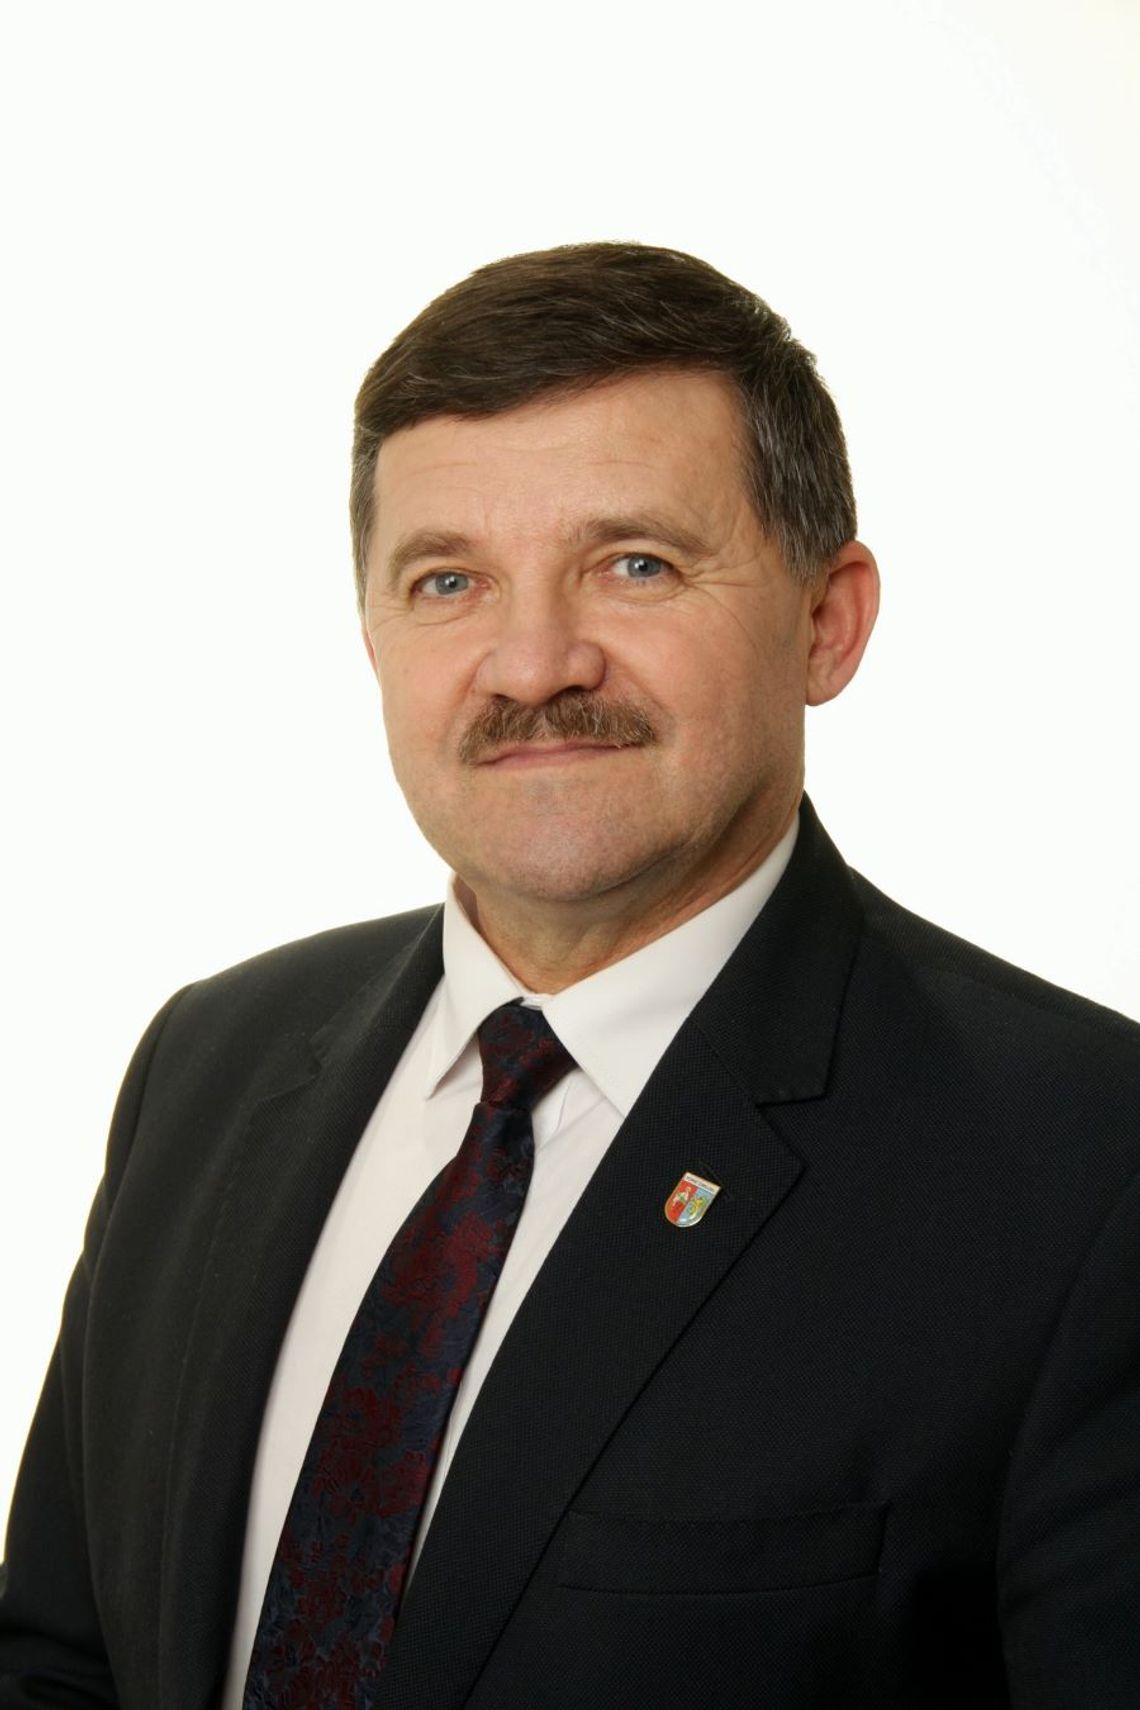 Nowym burmistrzem Łaszczowa został Mariusz Zając.